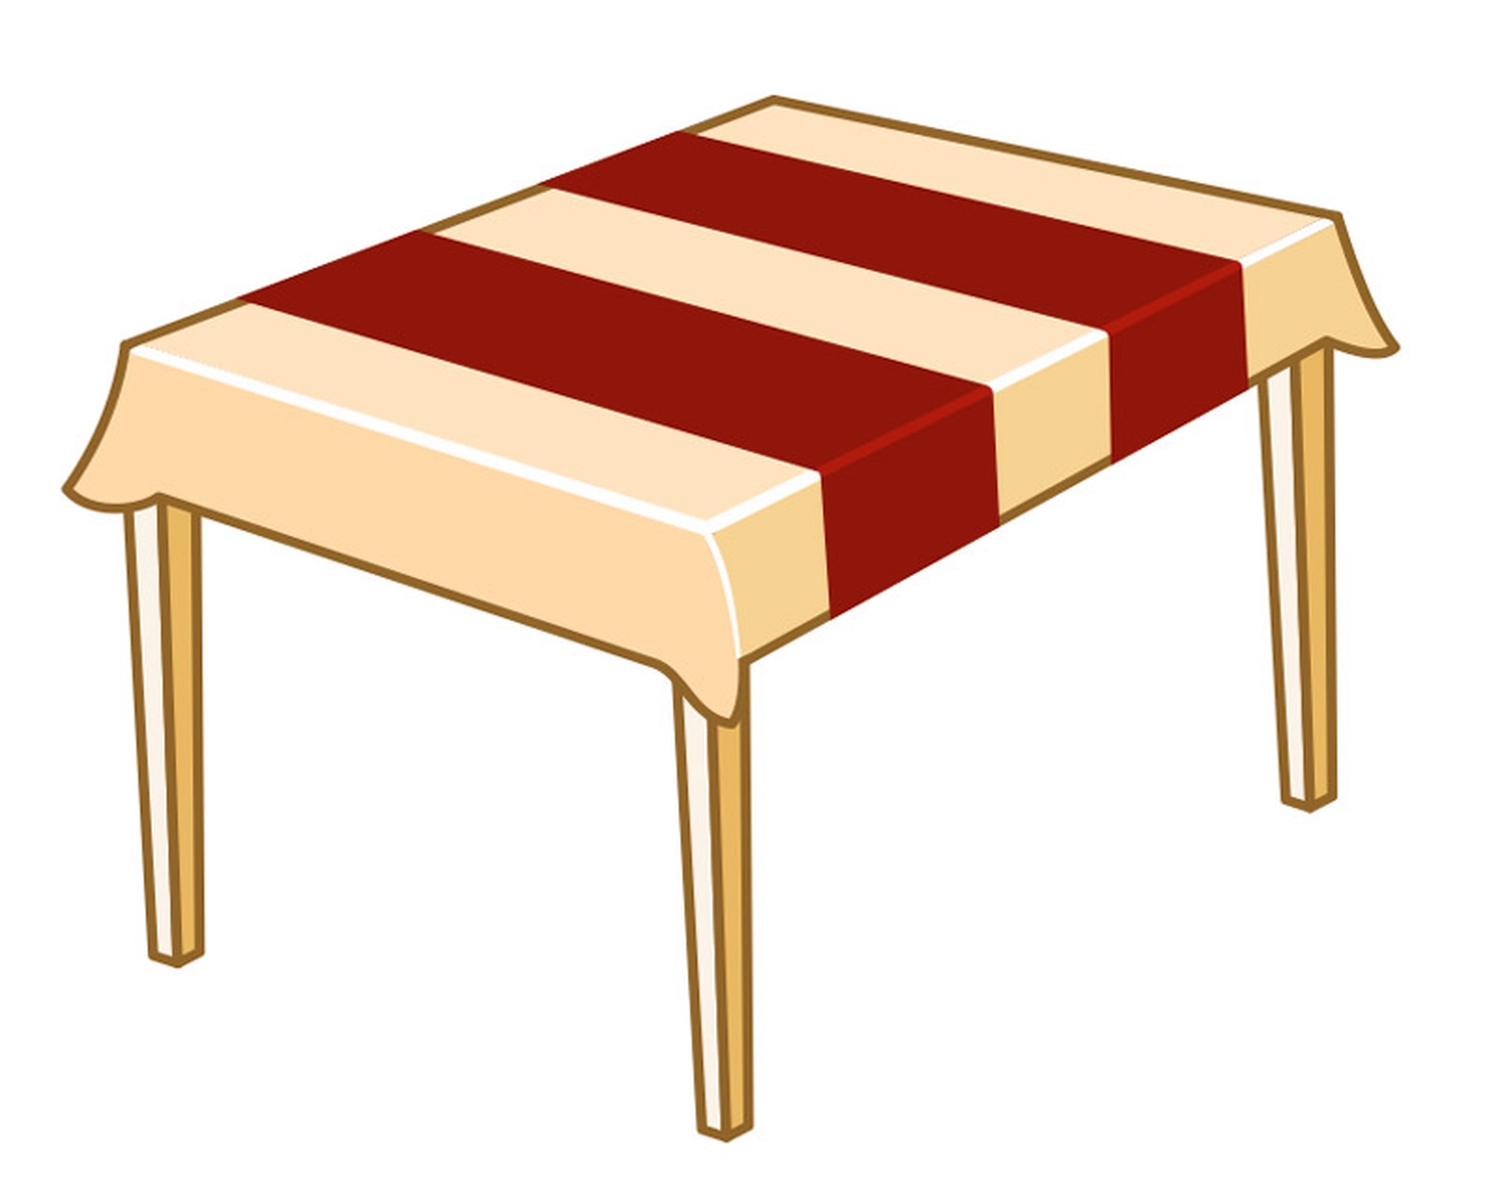 Tischläufer Airlaid 24m x 40cm - alle 120cm perforiert, stoffähnlich, rot